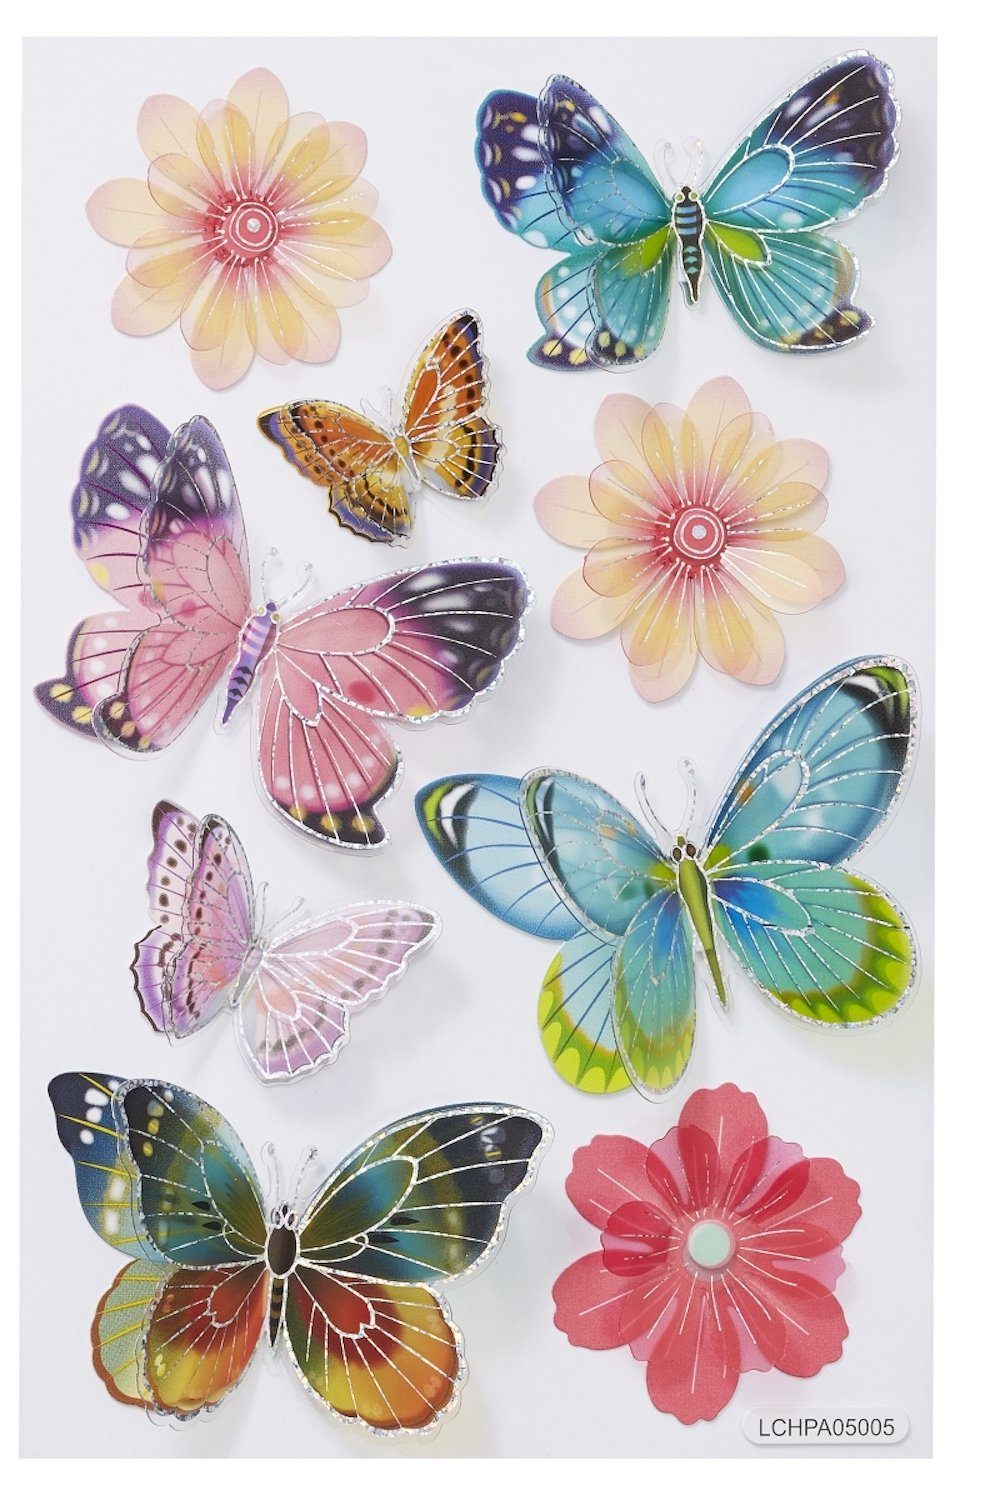 HobbyFun Aufkleber Sticker Schmetterling IV